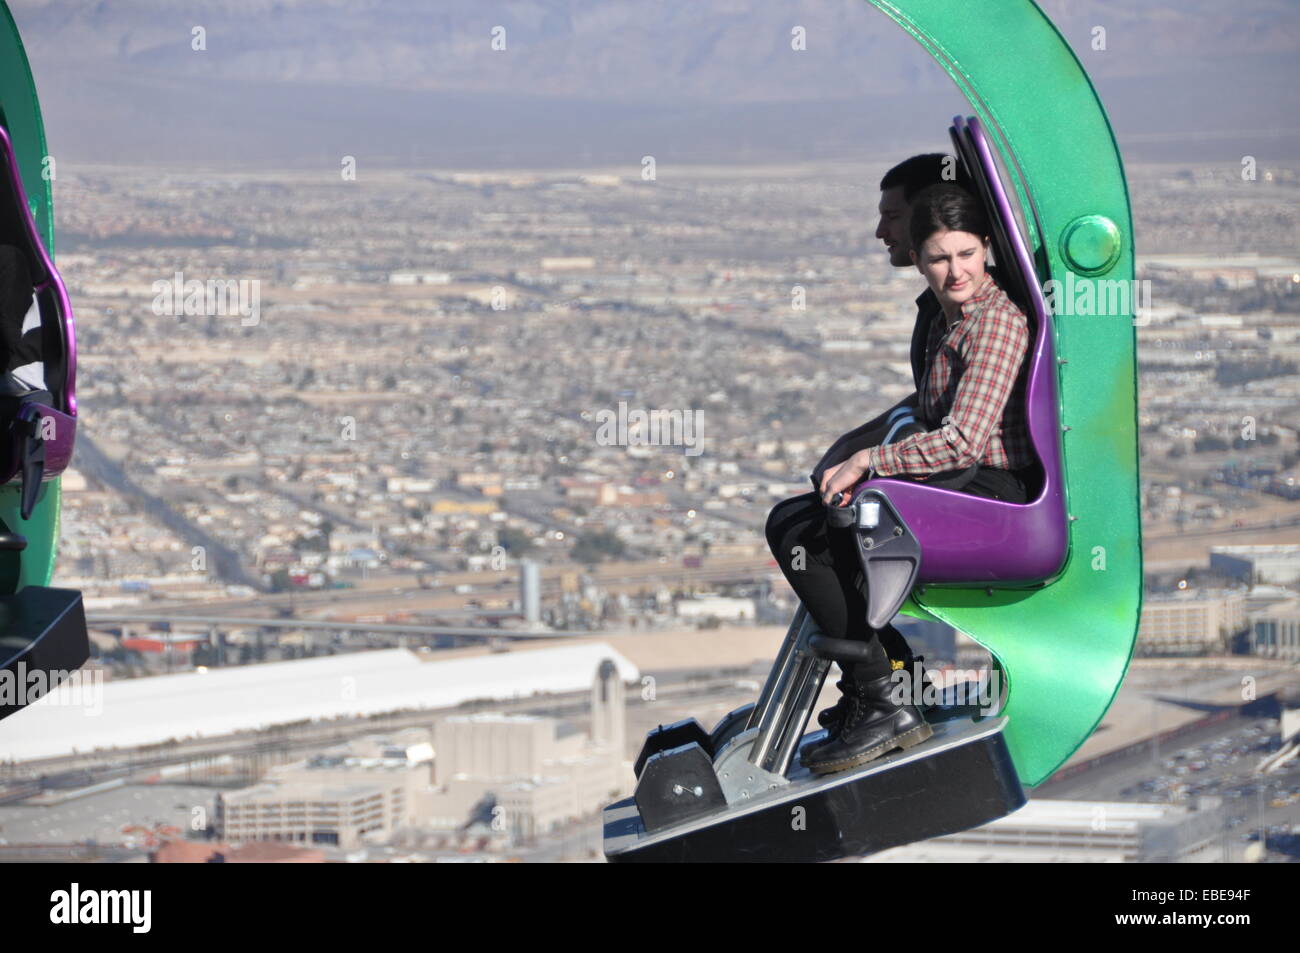 La folie manège situé sur le dessus de la Stratosphere Las Vegas. Banque D'Images